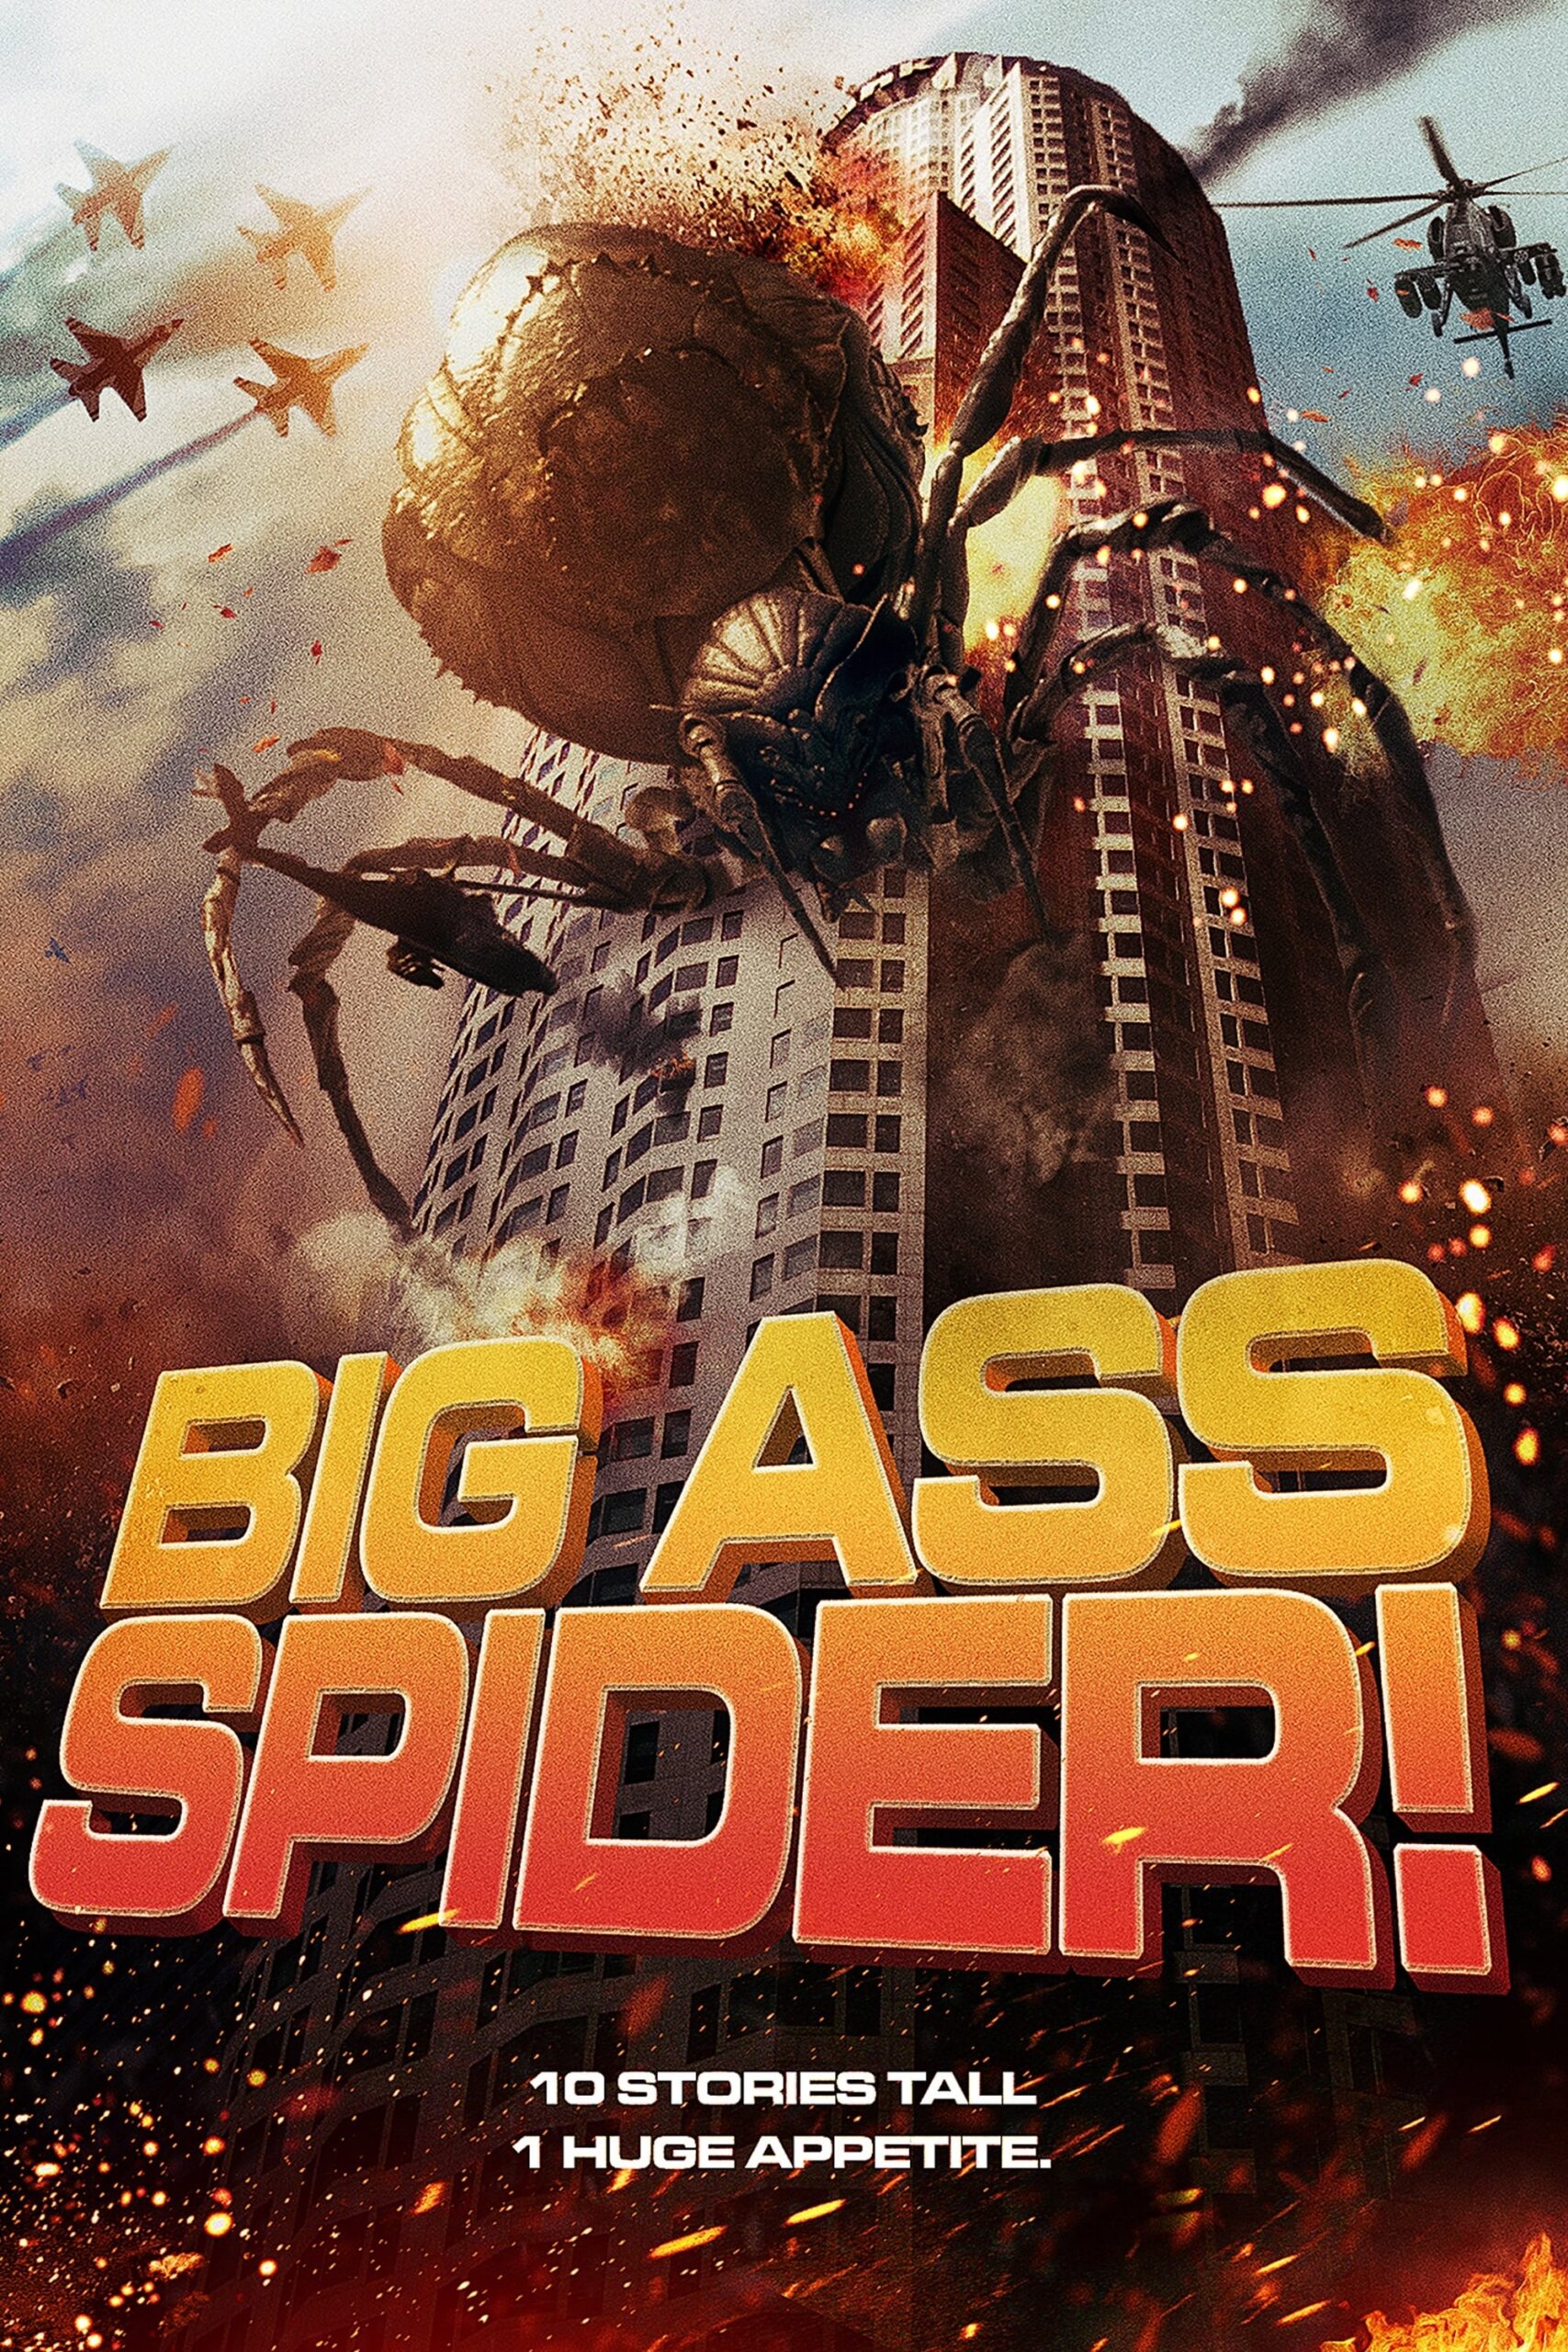 BIG ASS SPIDER! (2013)